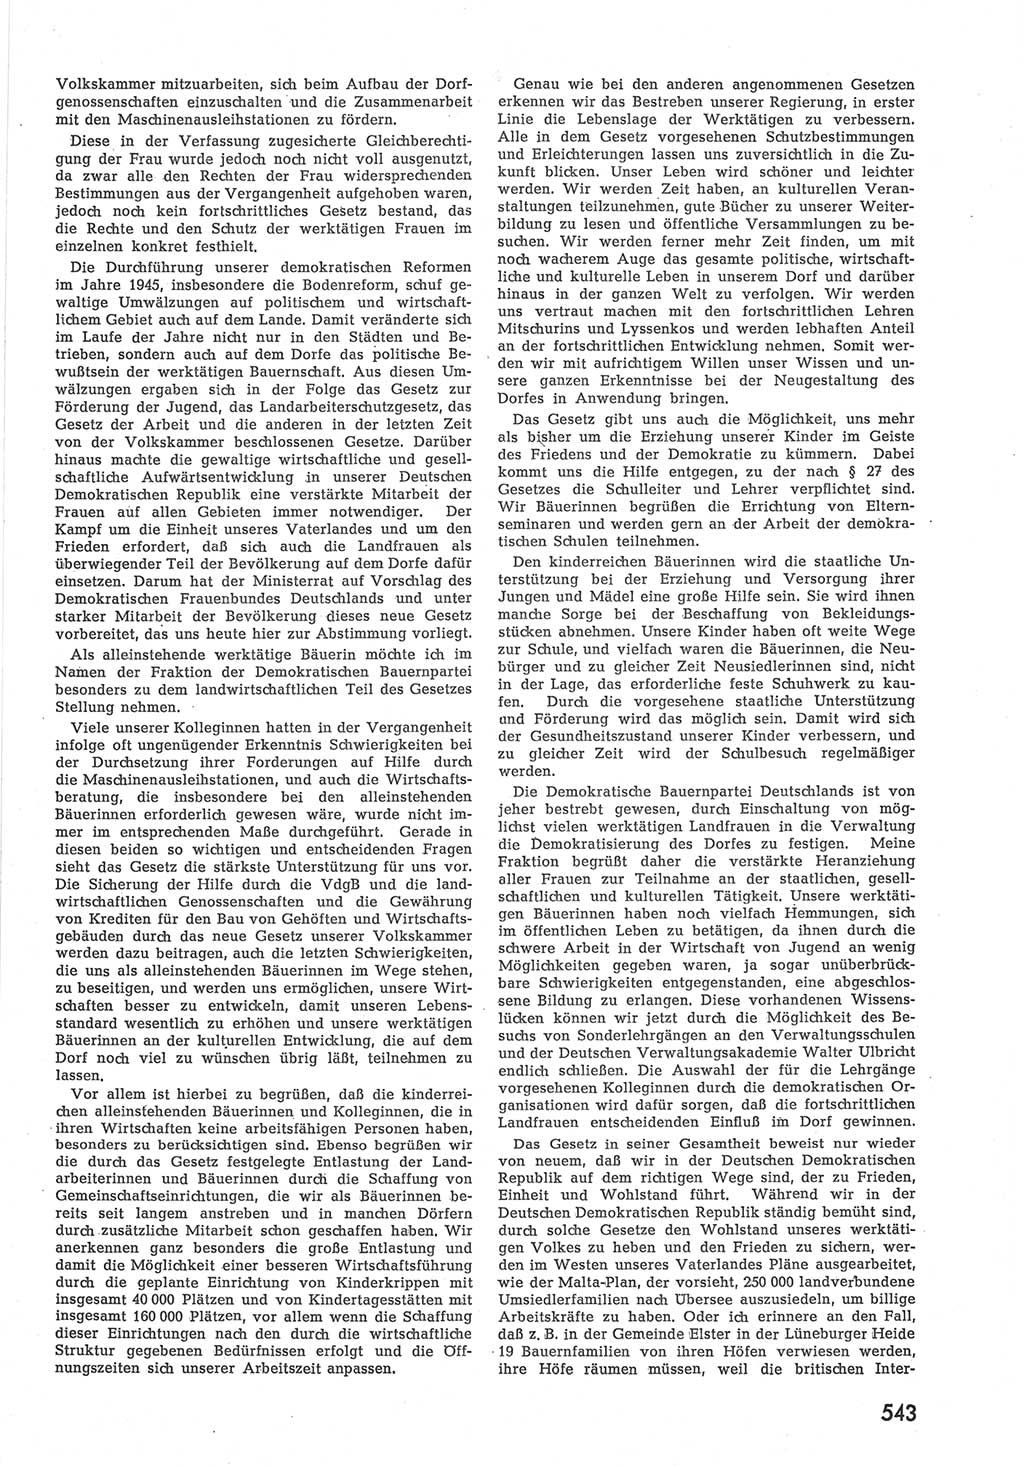 Provisorische Volkskammer (VK) der Deutschen Demokratischen Republik (DDR) 1949-1950, Dokument 561 (Prov. VK DDR 1949-1950, Dok. 561)